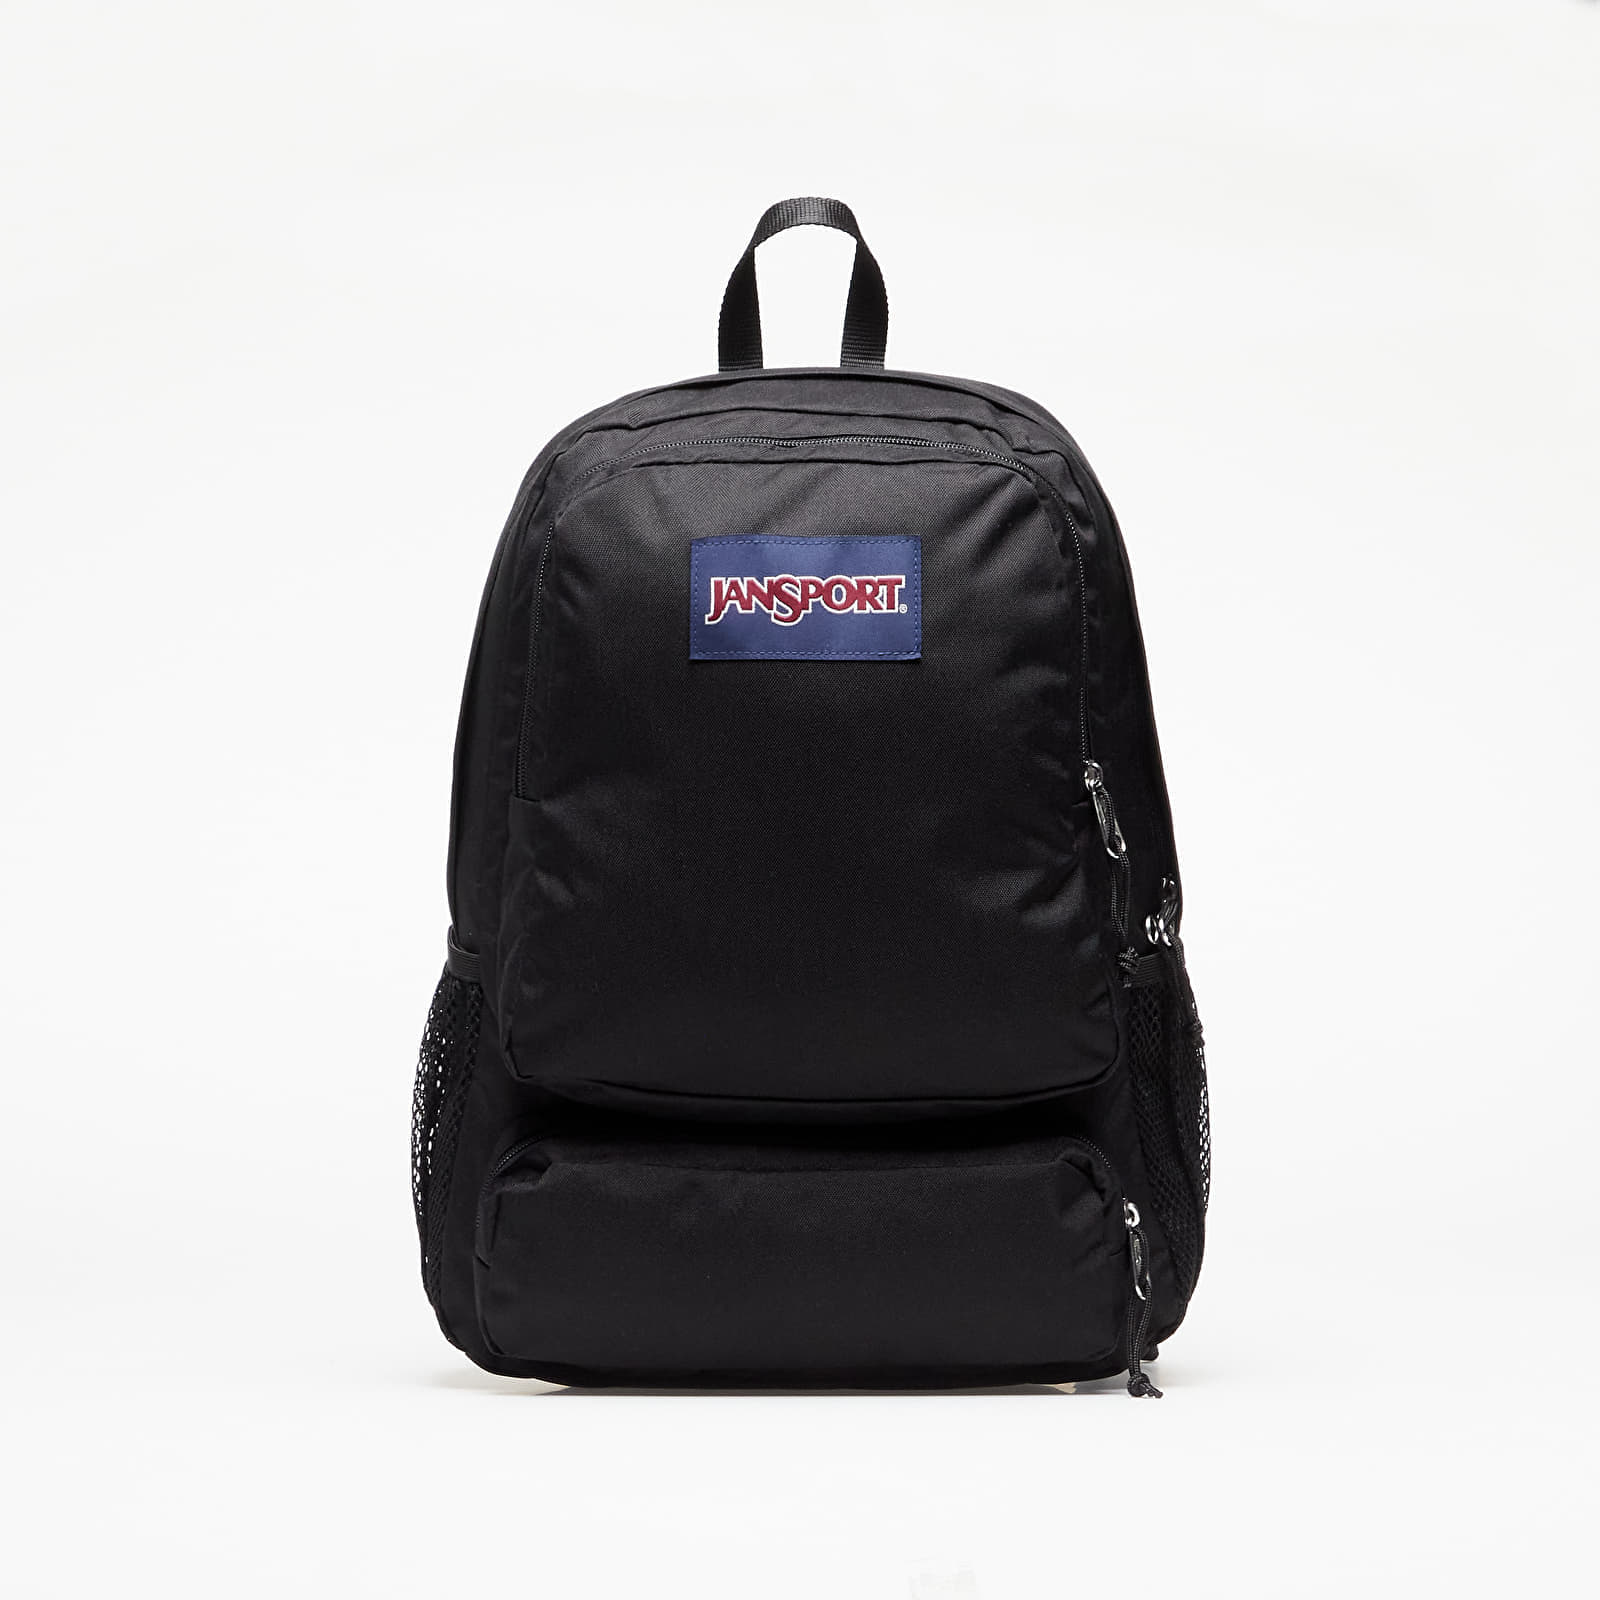 JanSport - doubleton backpack black